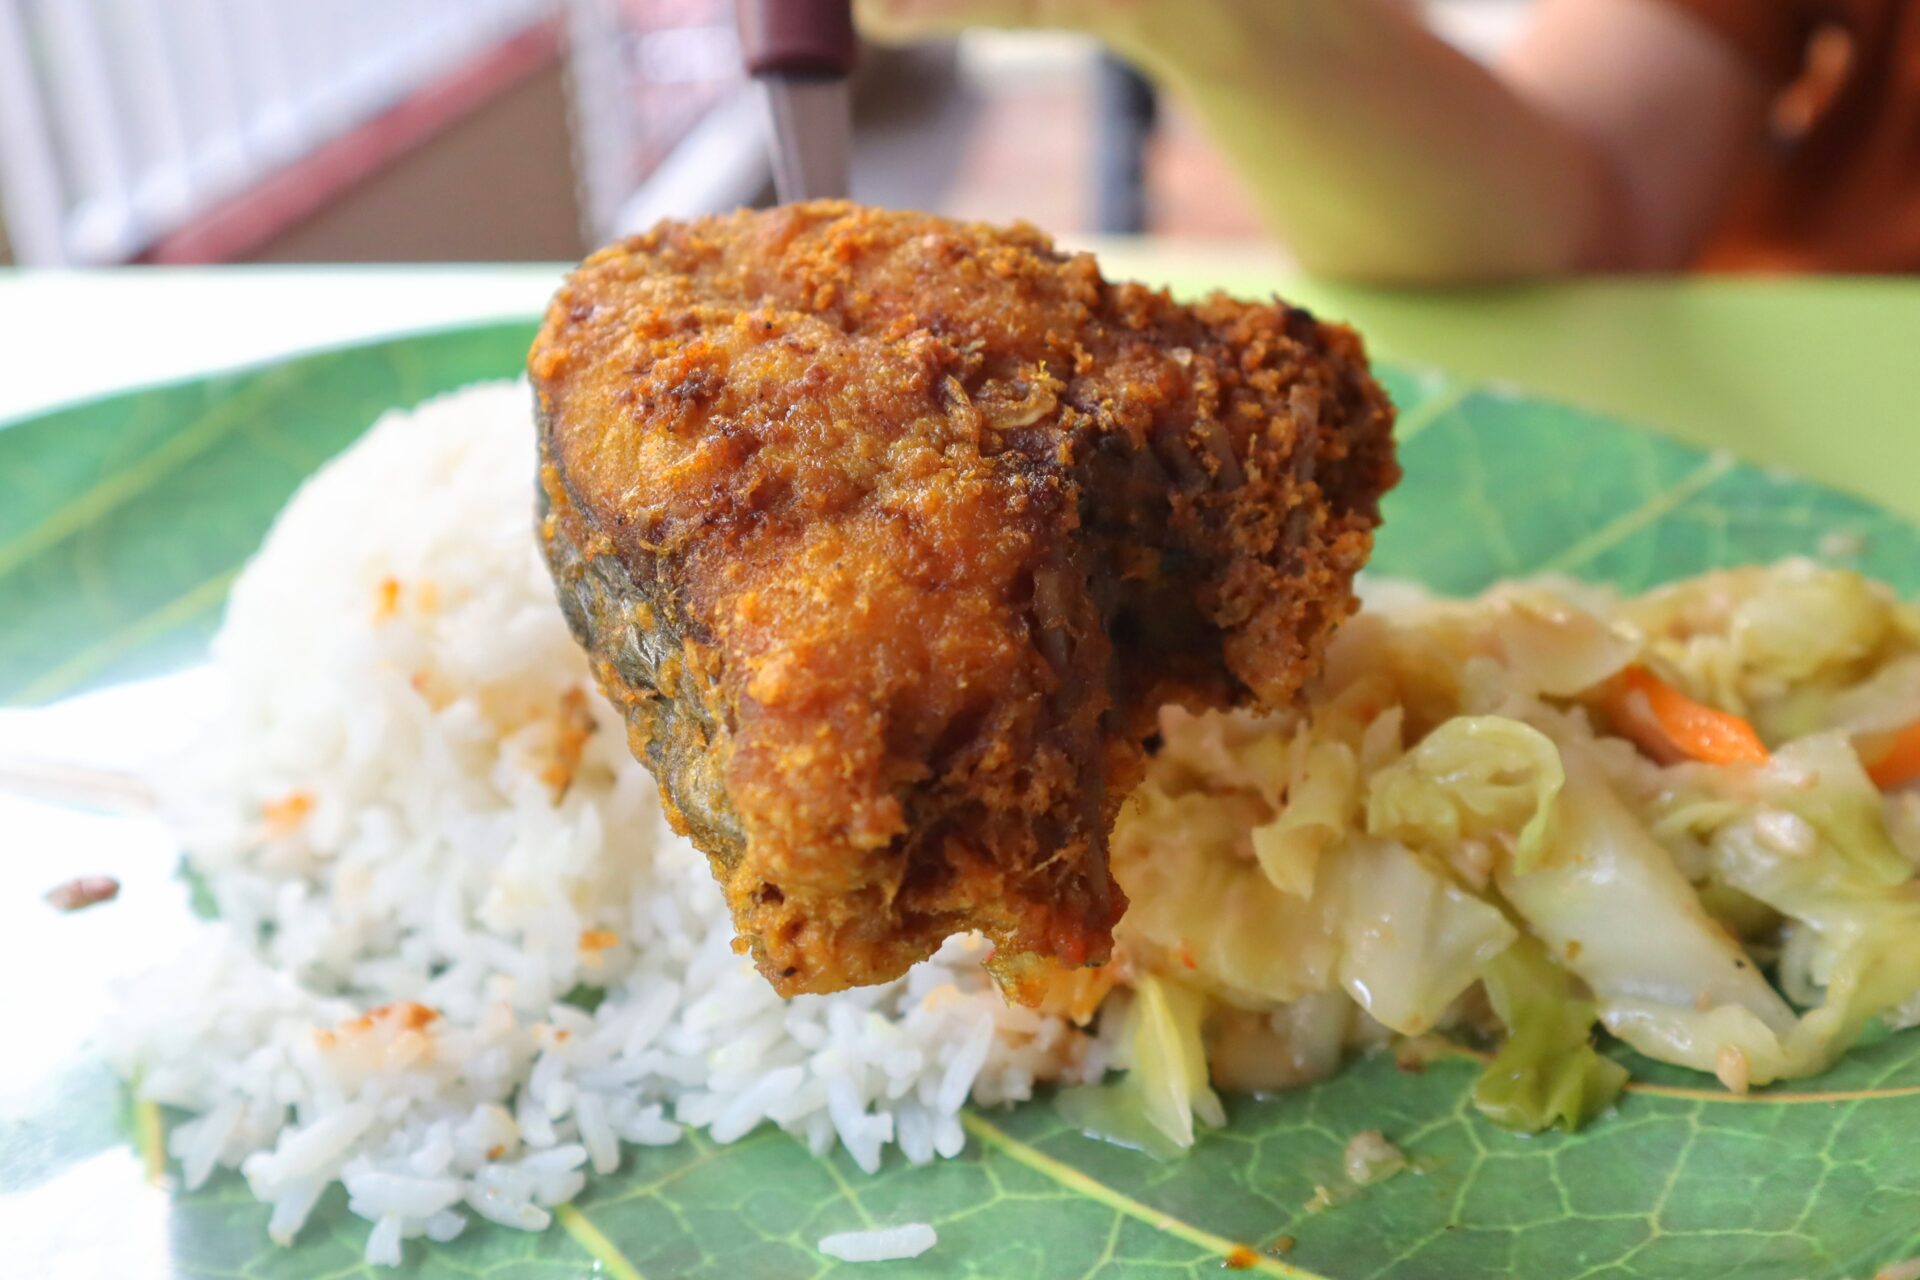 anthony indonesian cuisine - ikan goreng closeup